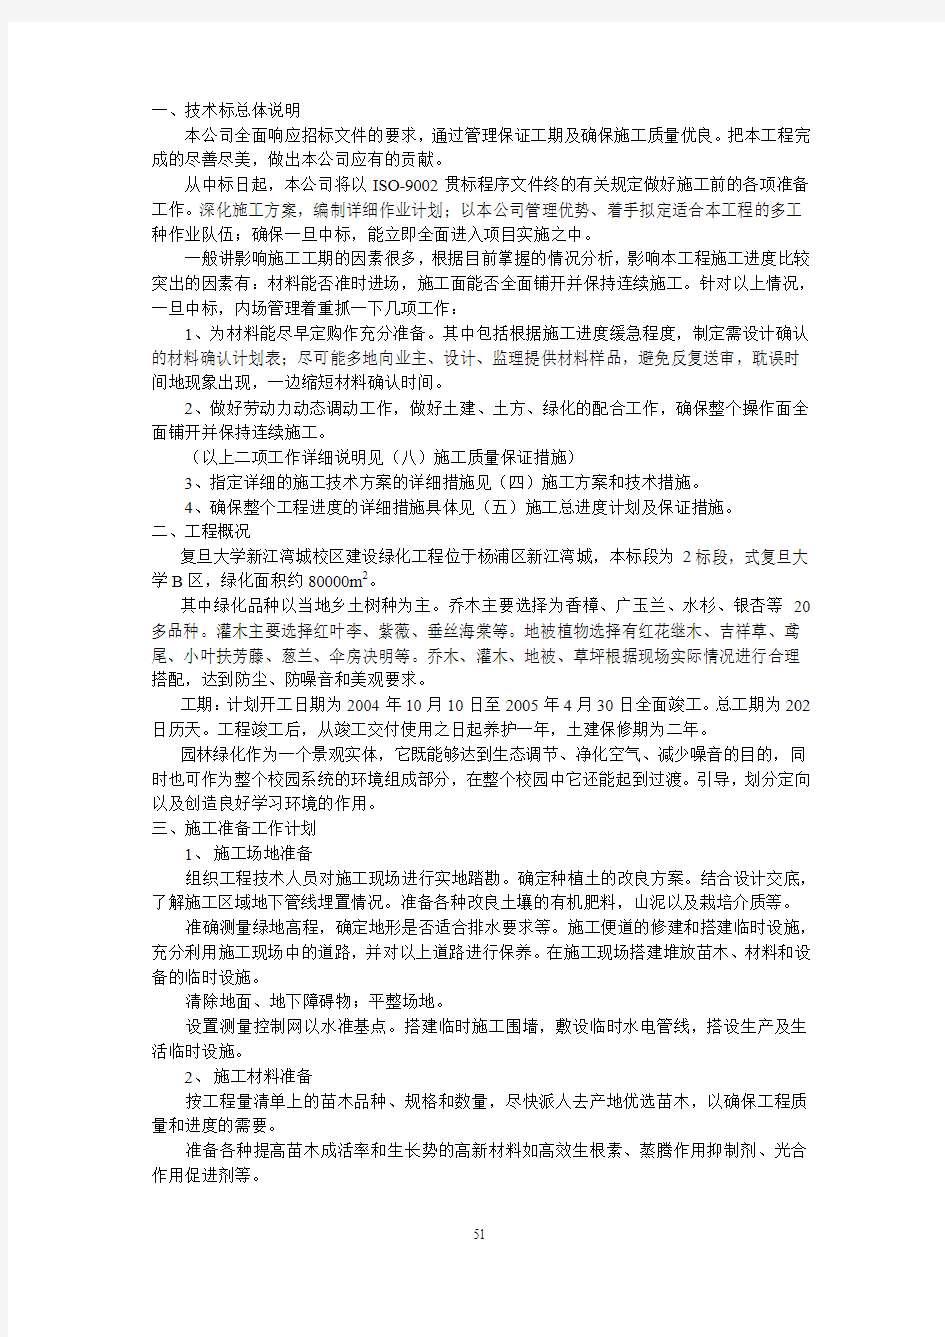 复旦大学新江湾城校区绿化工程公开招标II标的投标文件308